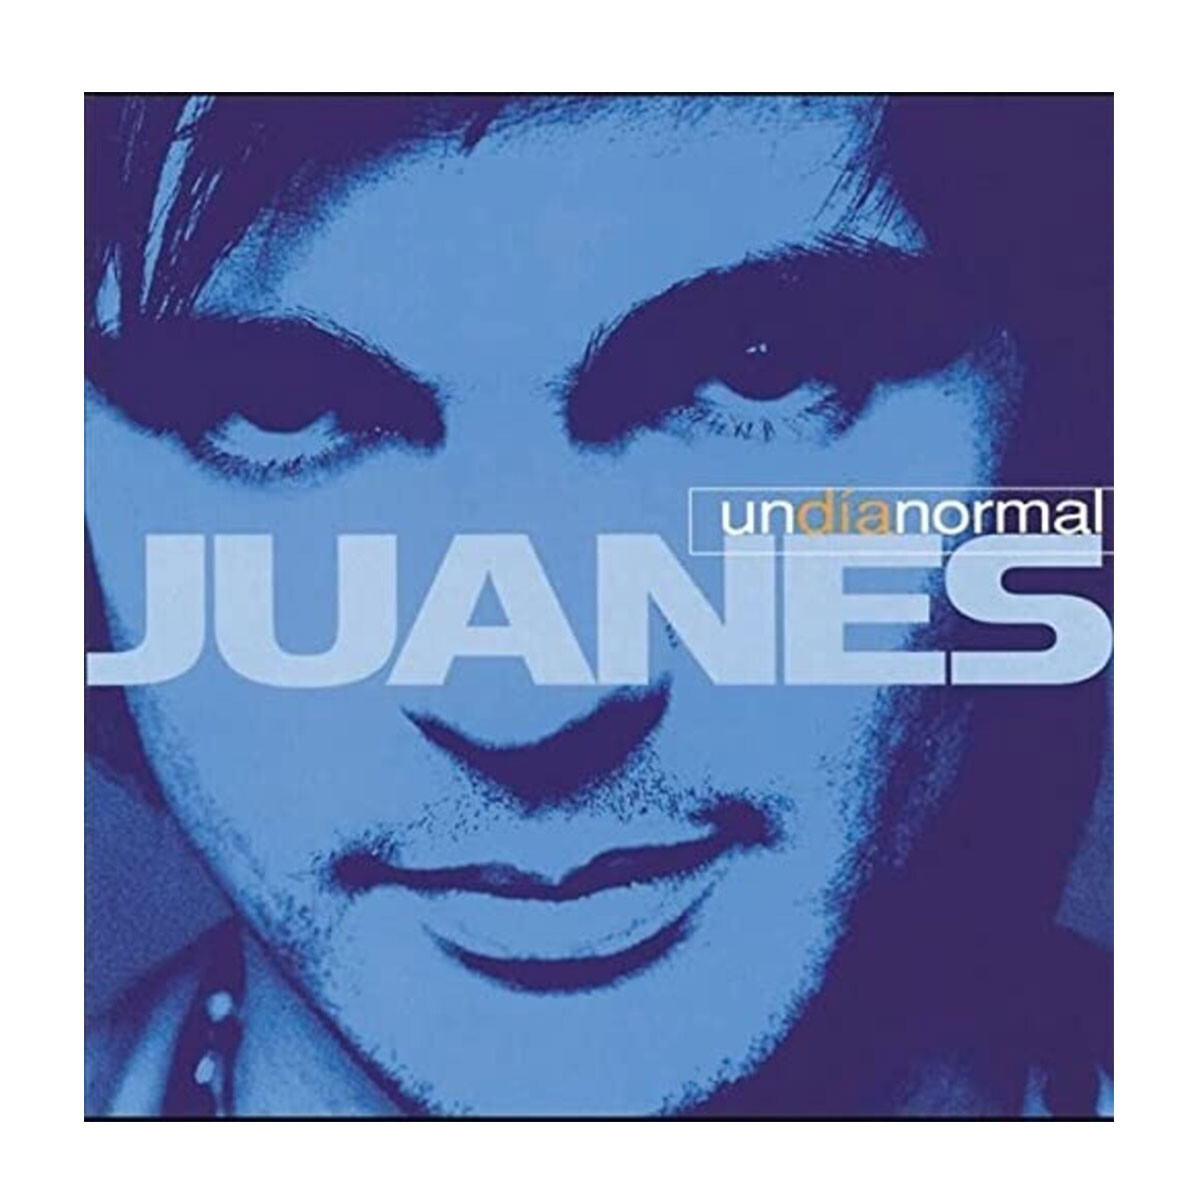 Juanes - Un Dia Normal Vinilo 